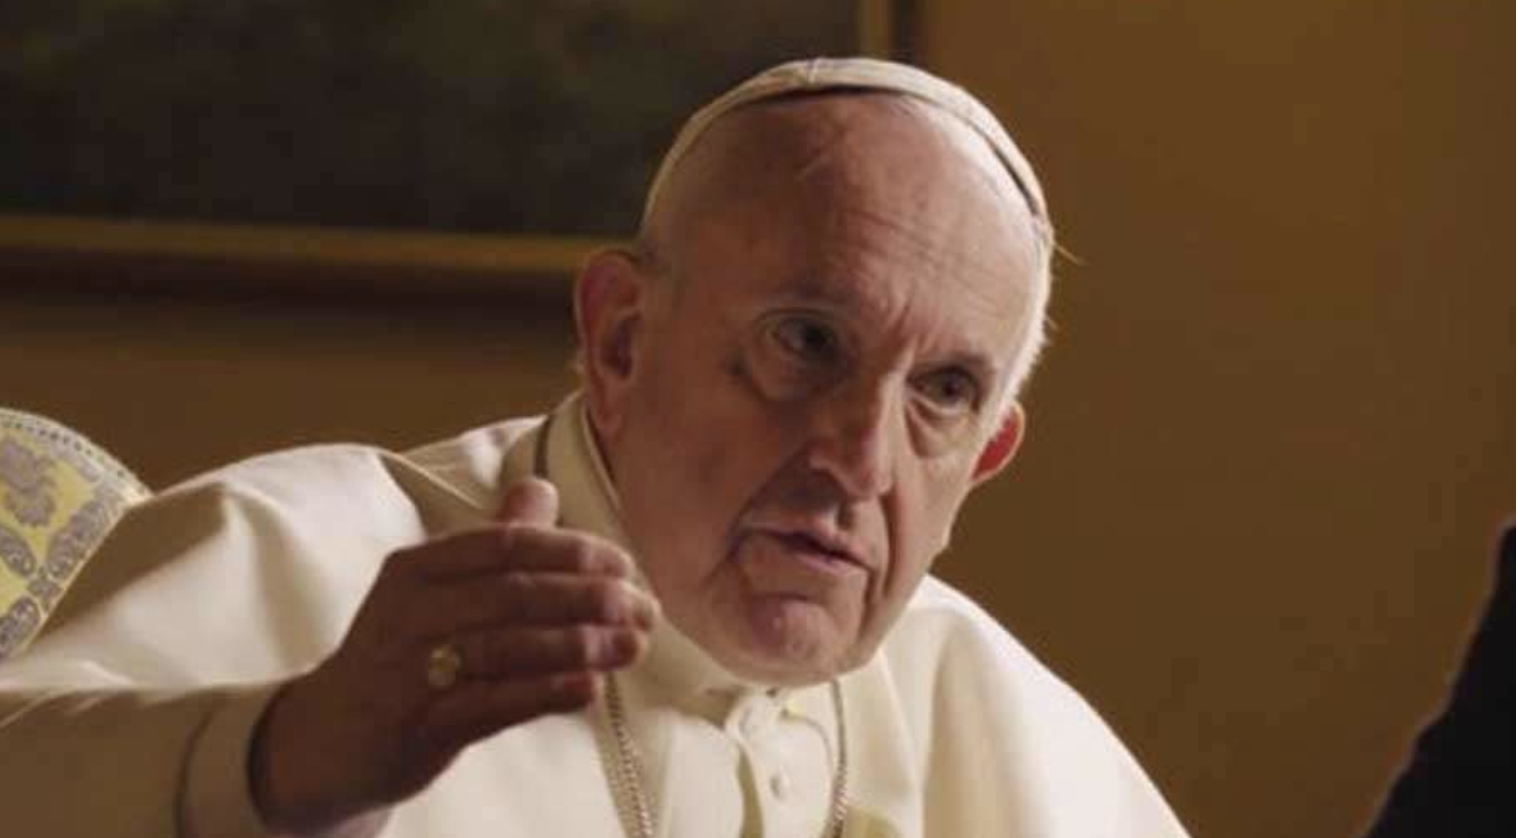 Essere Omomsessuali è Peccato? Ecco cosa ha detto Papa Francesco nella sua ultima intervista